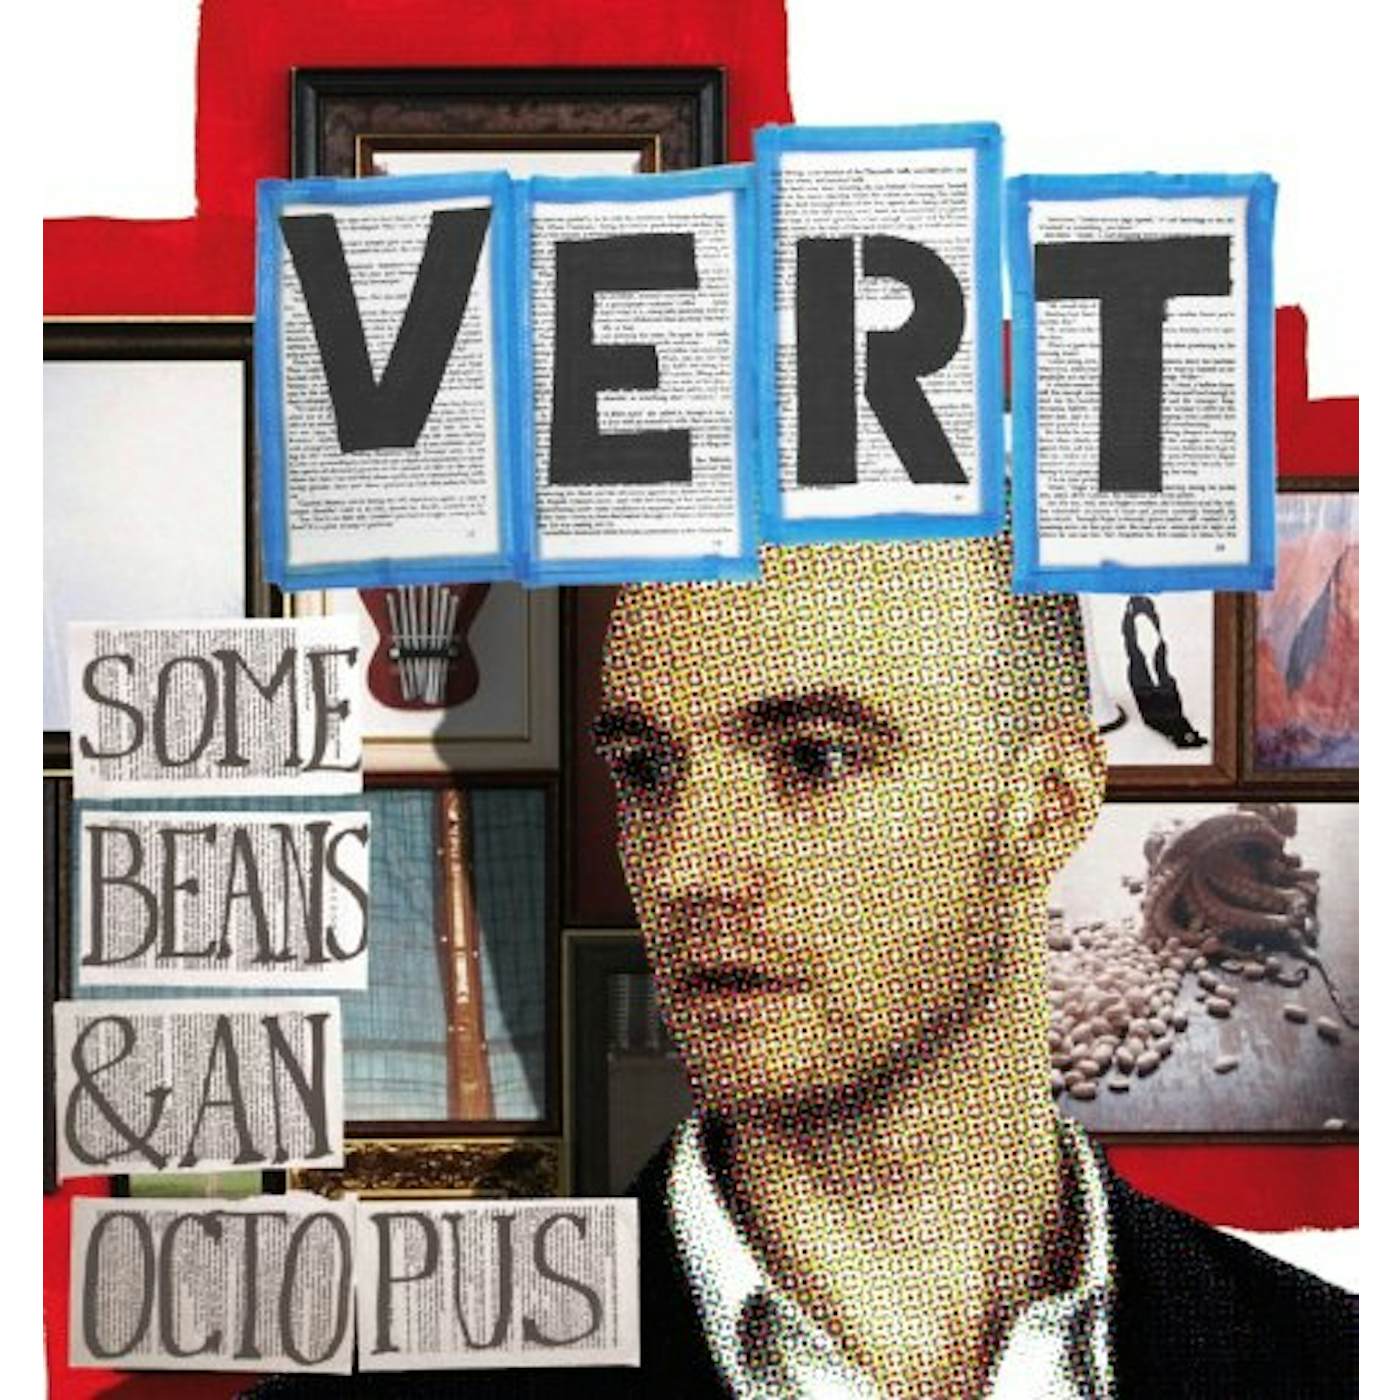 Vert SOME BEANS & AN OCTOPUS CD